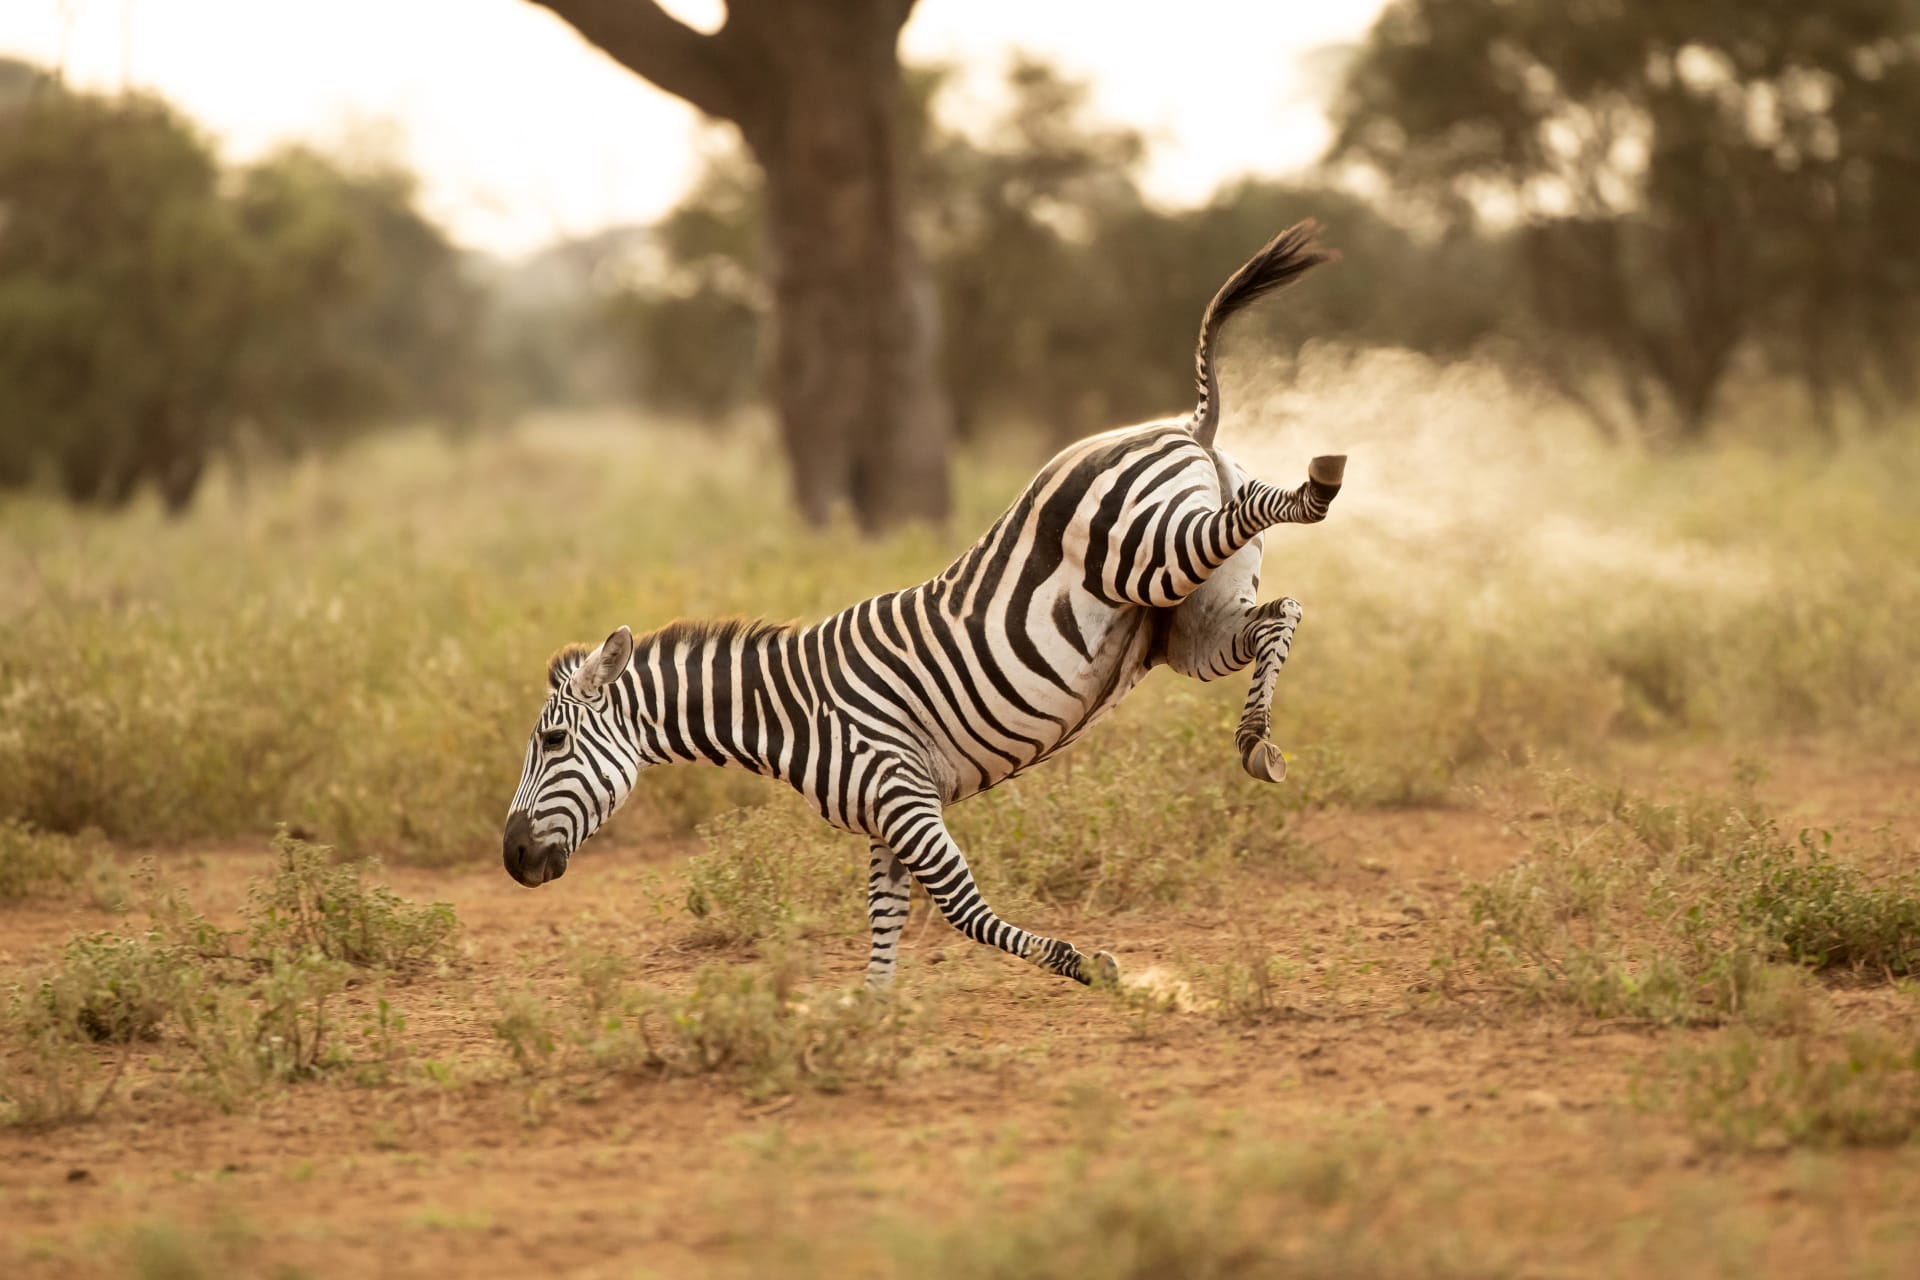 In Kenia wurde ein Fotograf von einer lustigen Szene eines Zebras überrascht "Fürze"